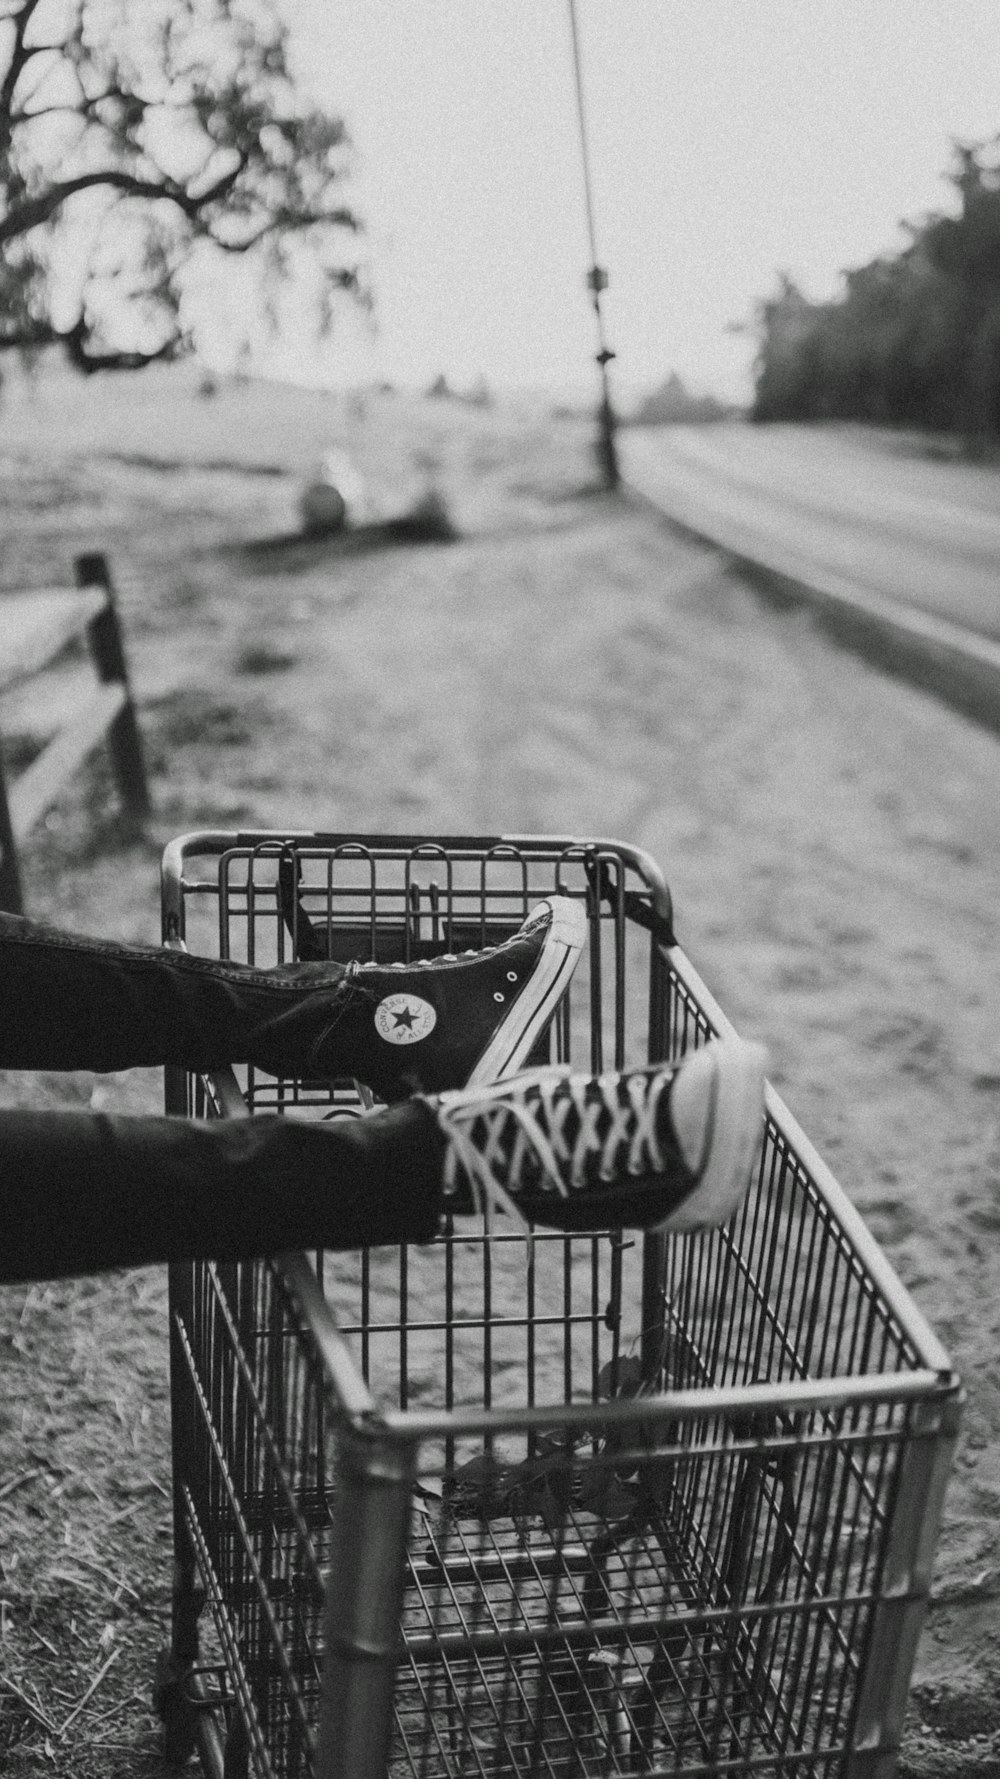 foto em tons de cinza do pé da pessoa no carrinho de supermercado de metal